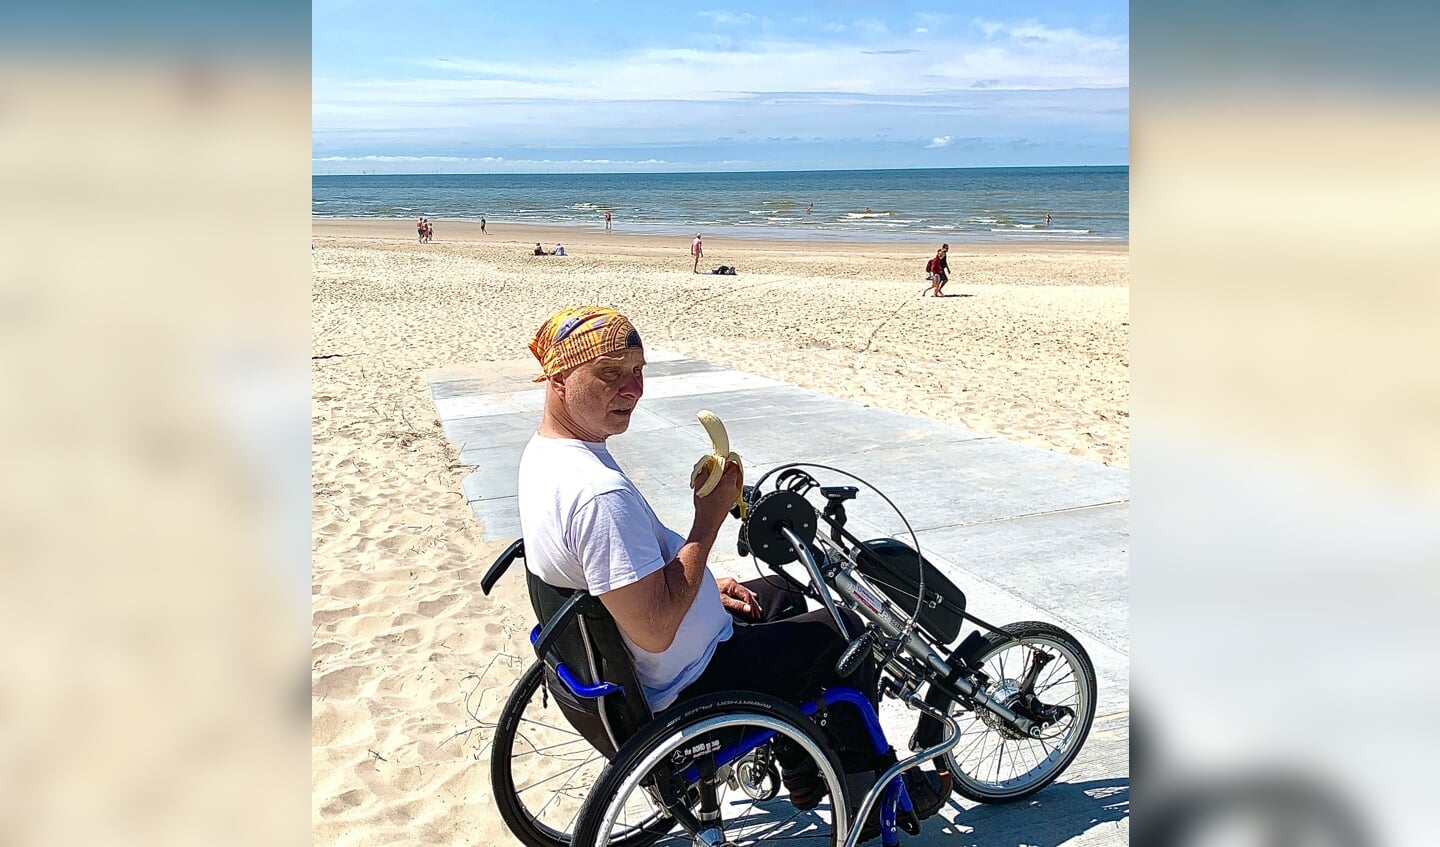 In juli waren we op vakantie in Egmond aan Zee. Ondanks de rolstoel konden we bij Schoorl toch een stukje het strand op met de rolstoel. Ons motto is: kijk wat er wél kan… en gewoon gaan met die banaan! 